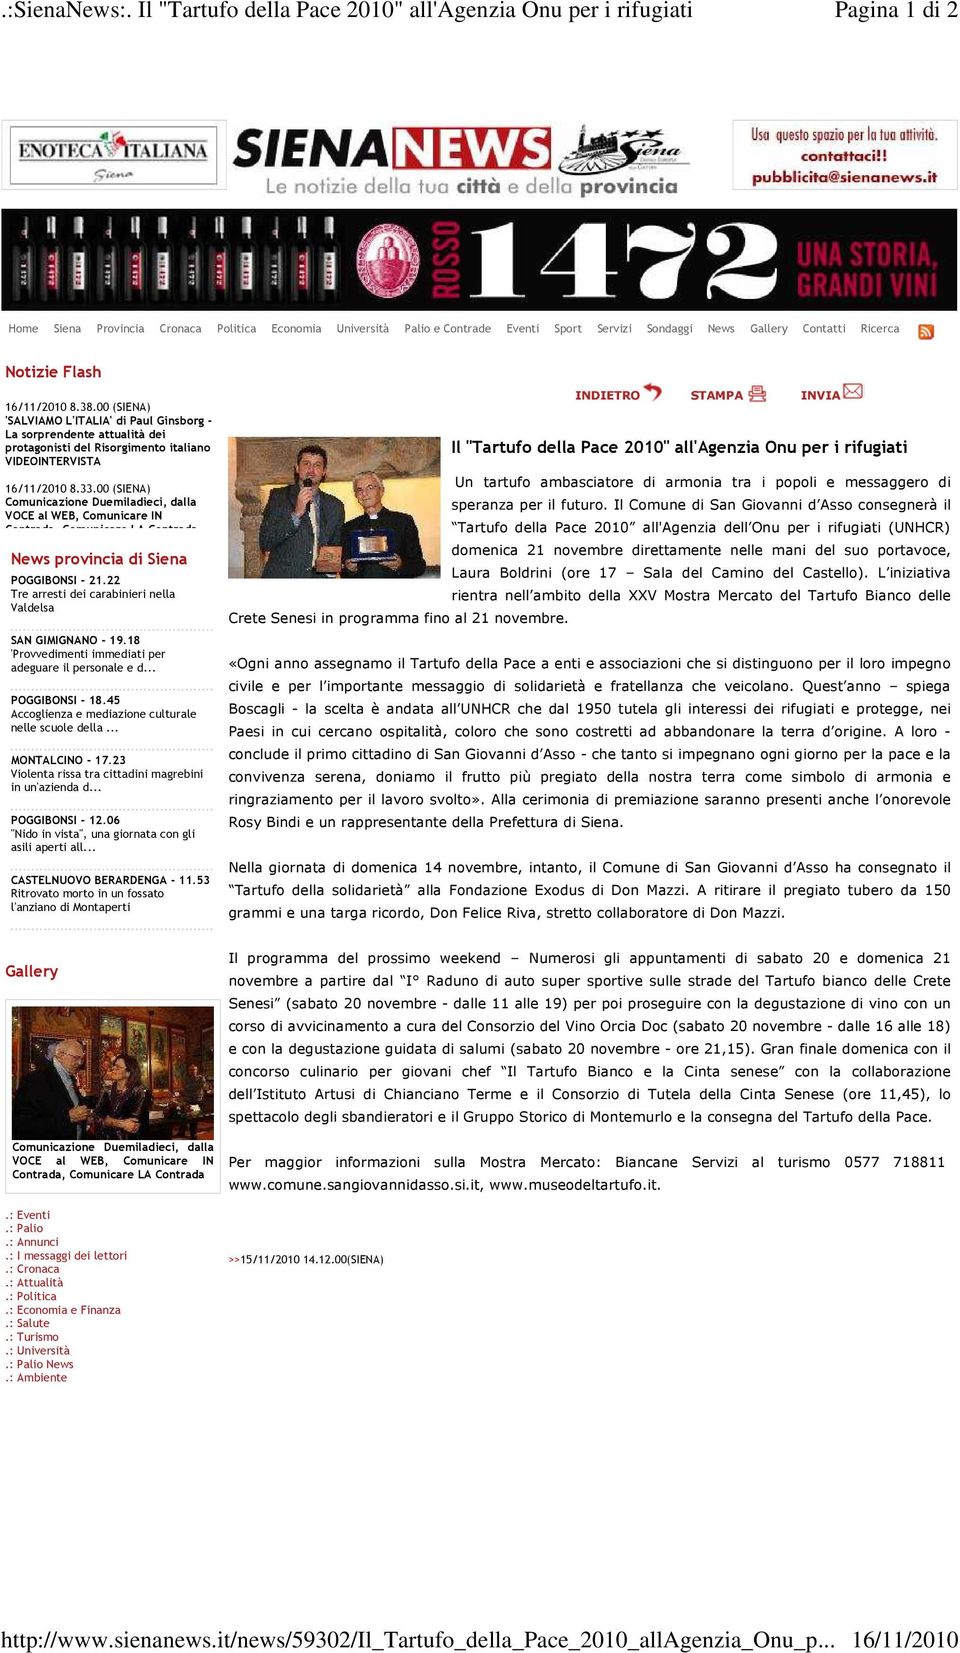 00 (SIENA) 'SALVIAMO L'ITALIA' di Paul Ginsborg - La sorprendente attualità dei protagonisti del Risorgimento italiano VIDEOINTERVISTA 16/11/2010 8.33.